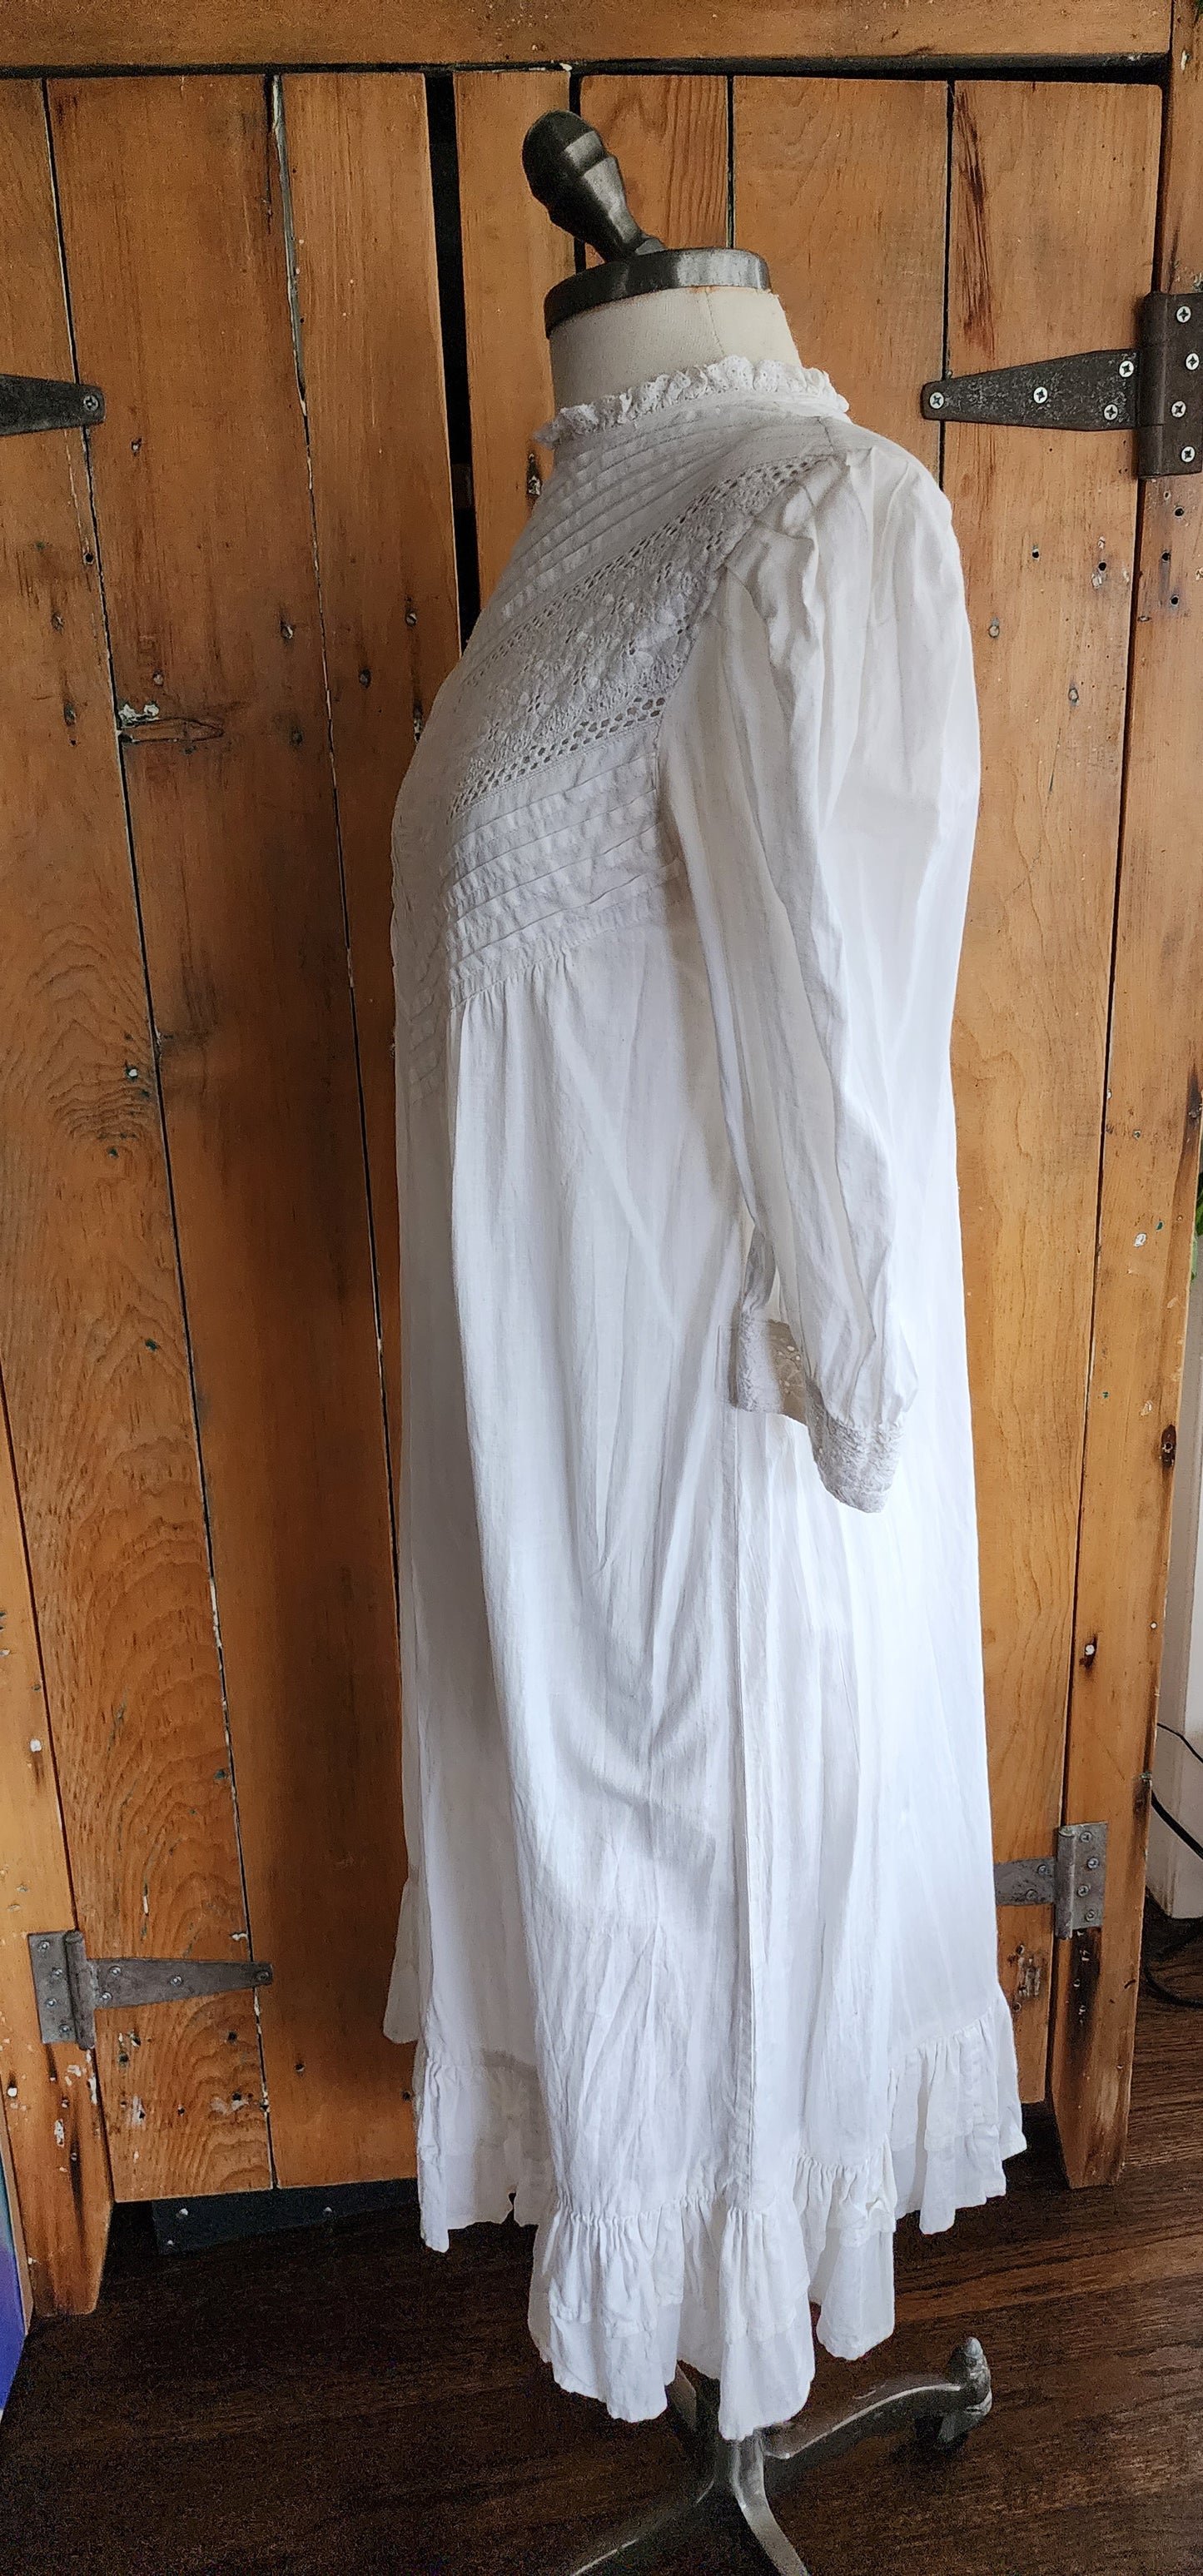 Vintage 80s White Cotton Prairie Style Dress India Cotton Eyelet Embroidery